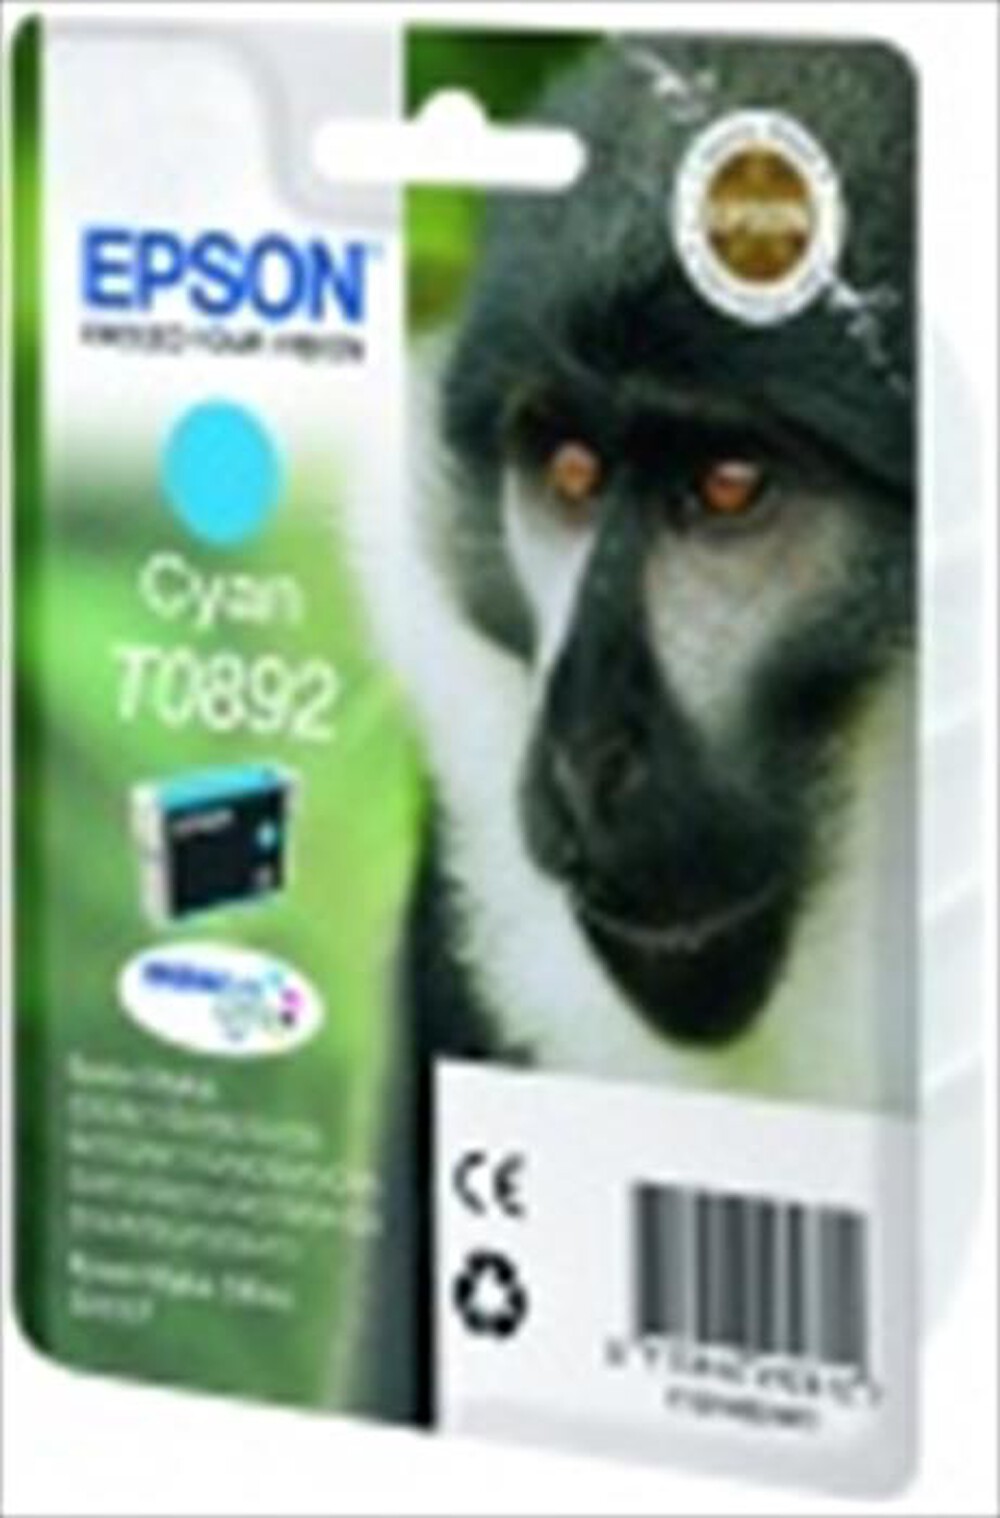 "EPSON - Cartuccia inchiostro ciano C13T08924021-Ciano"